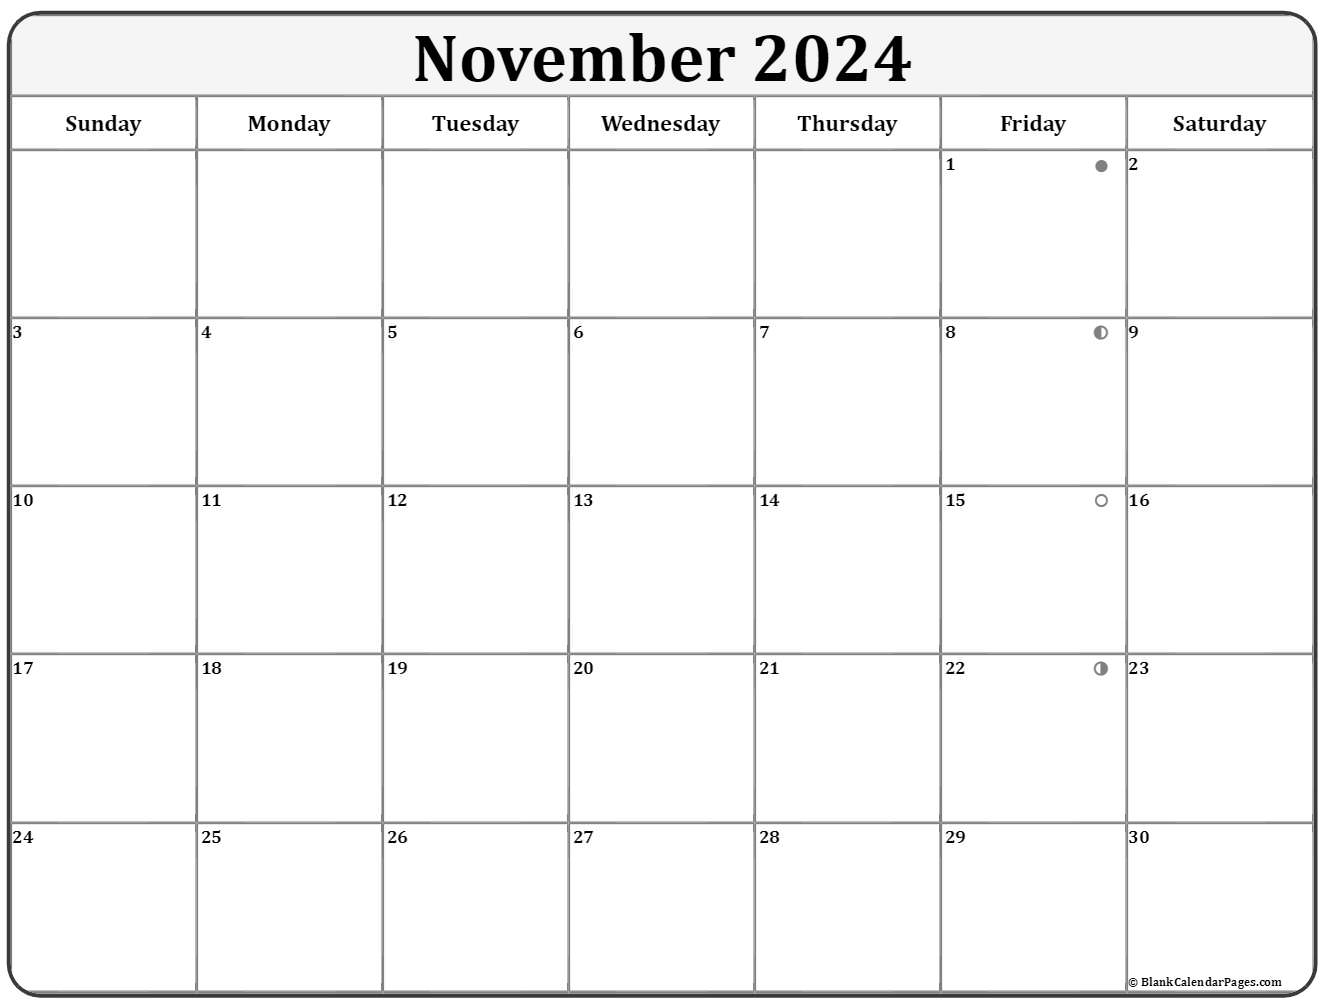 November 2024 Lunar Calendar Moon Phase Calendar